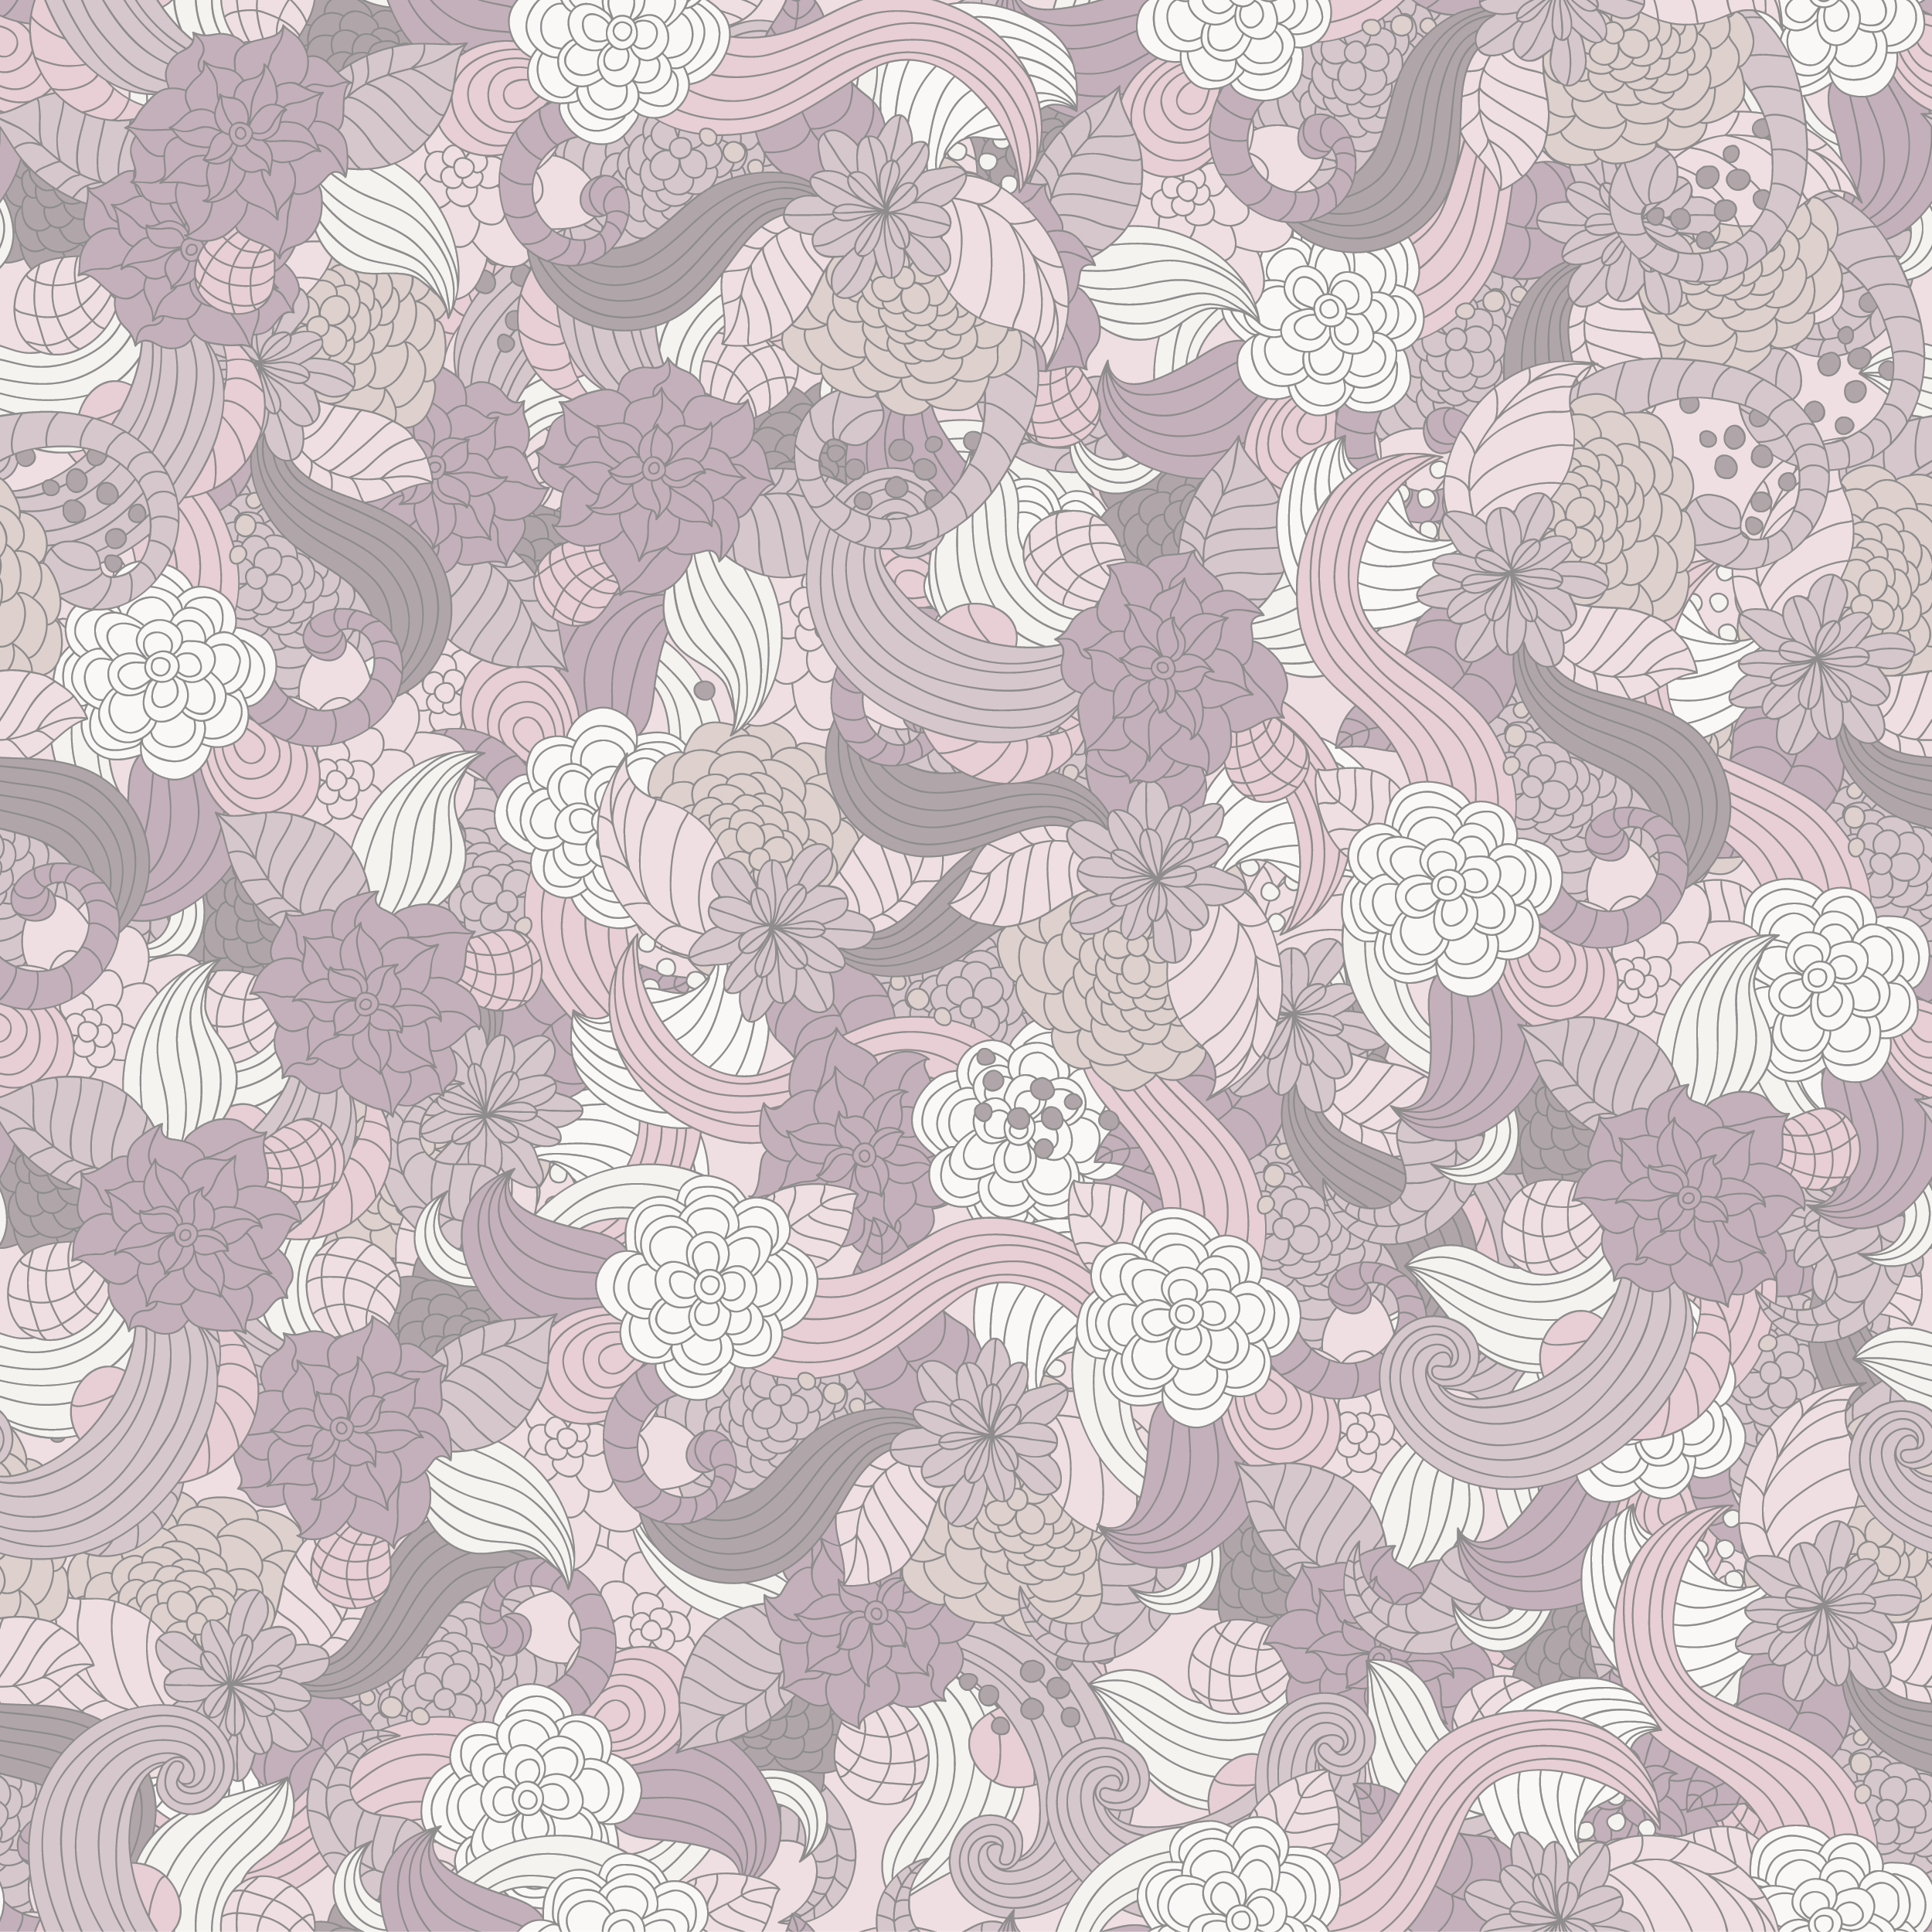 壁紙 背景イラスト 花の模様 柄 パターン No 010 紫基調 茎葉 やや薄